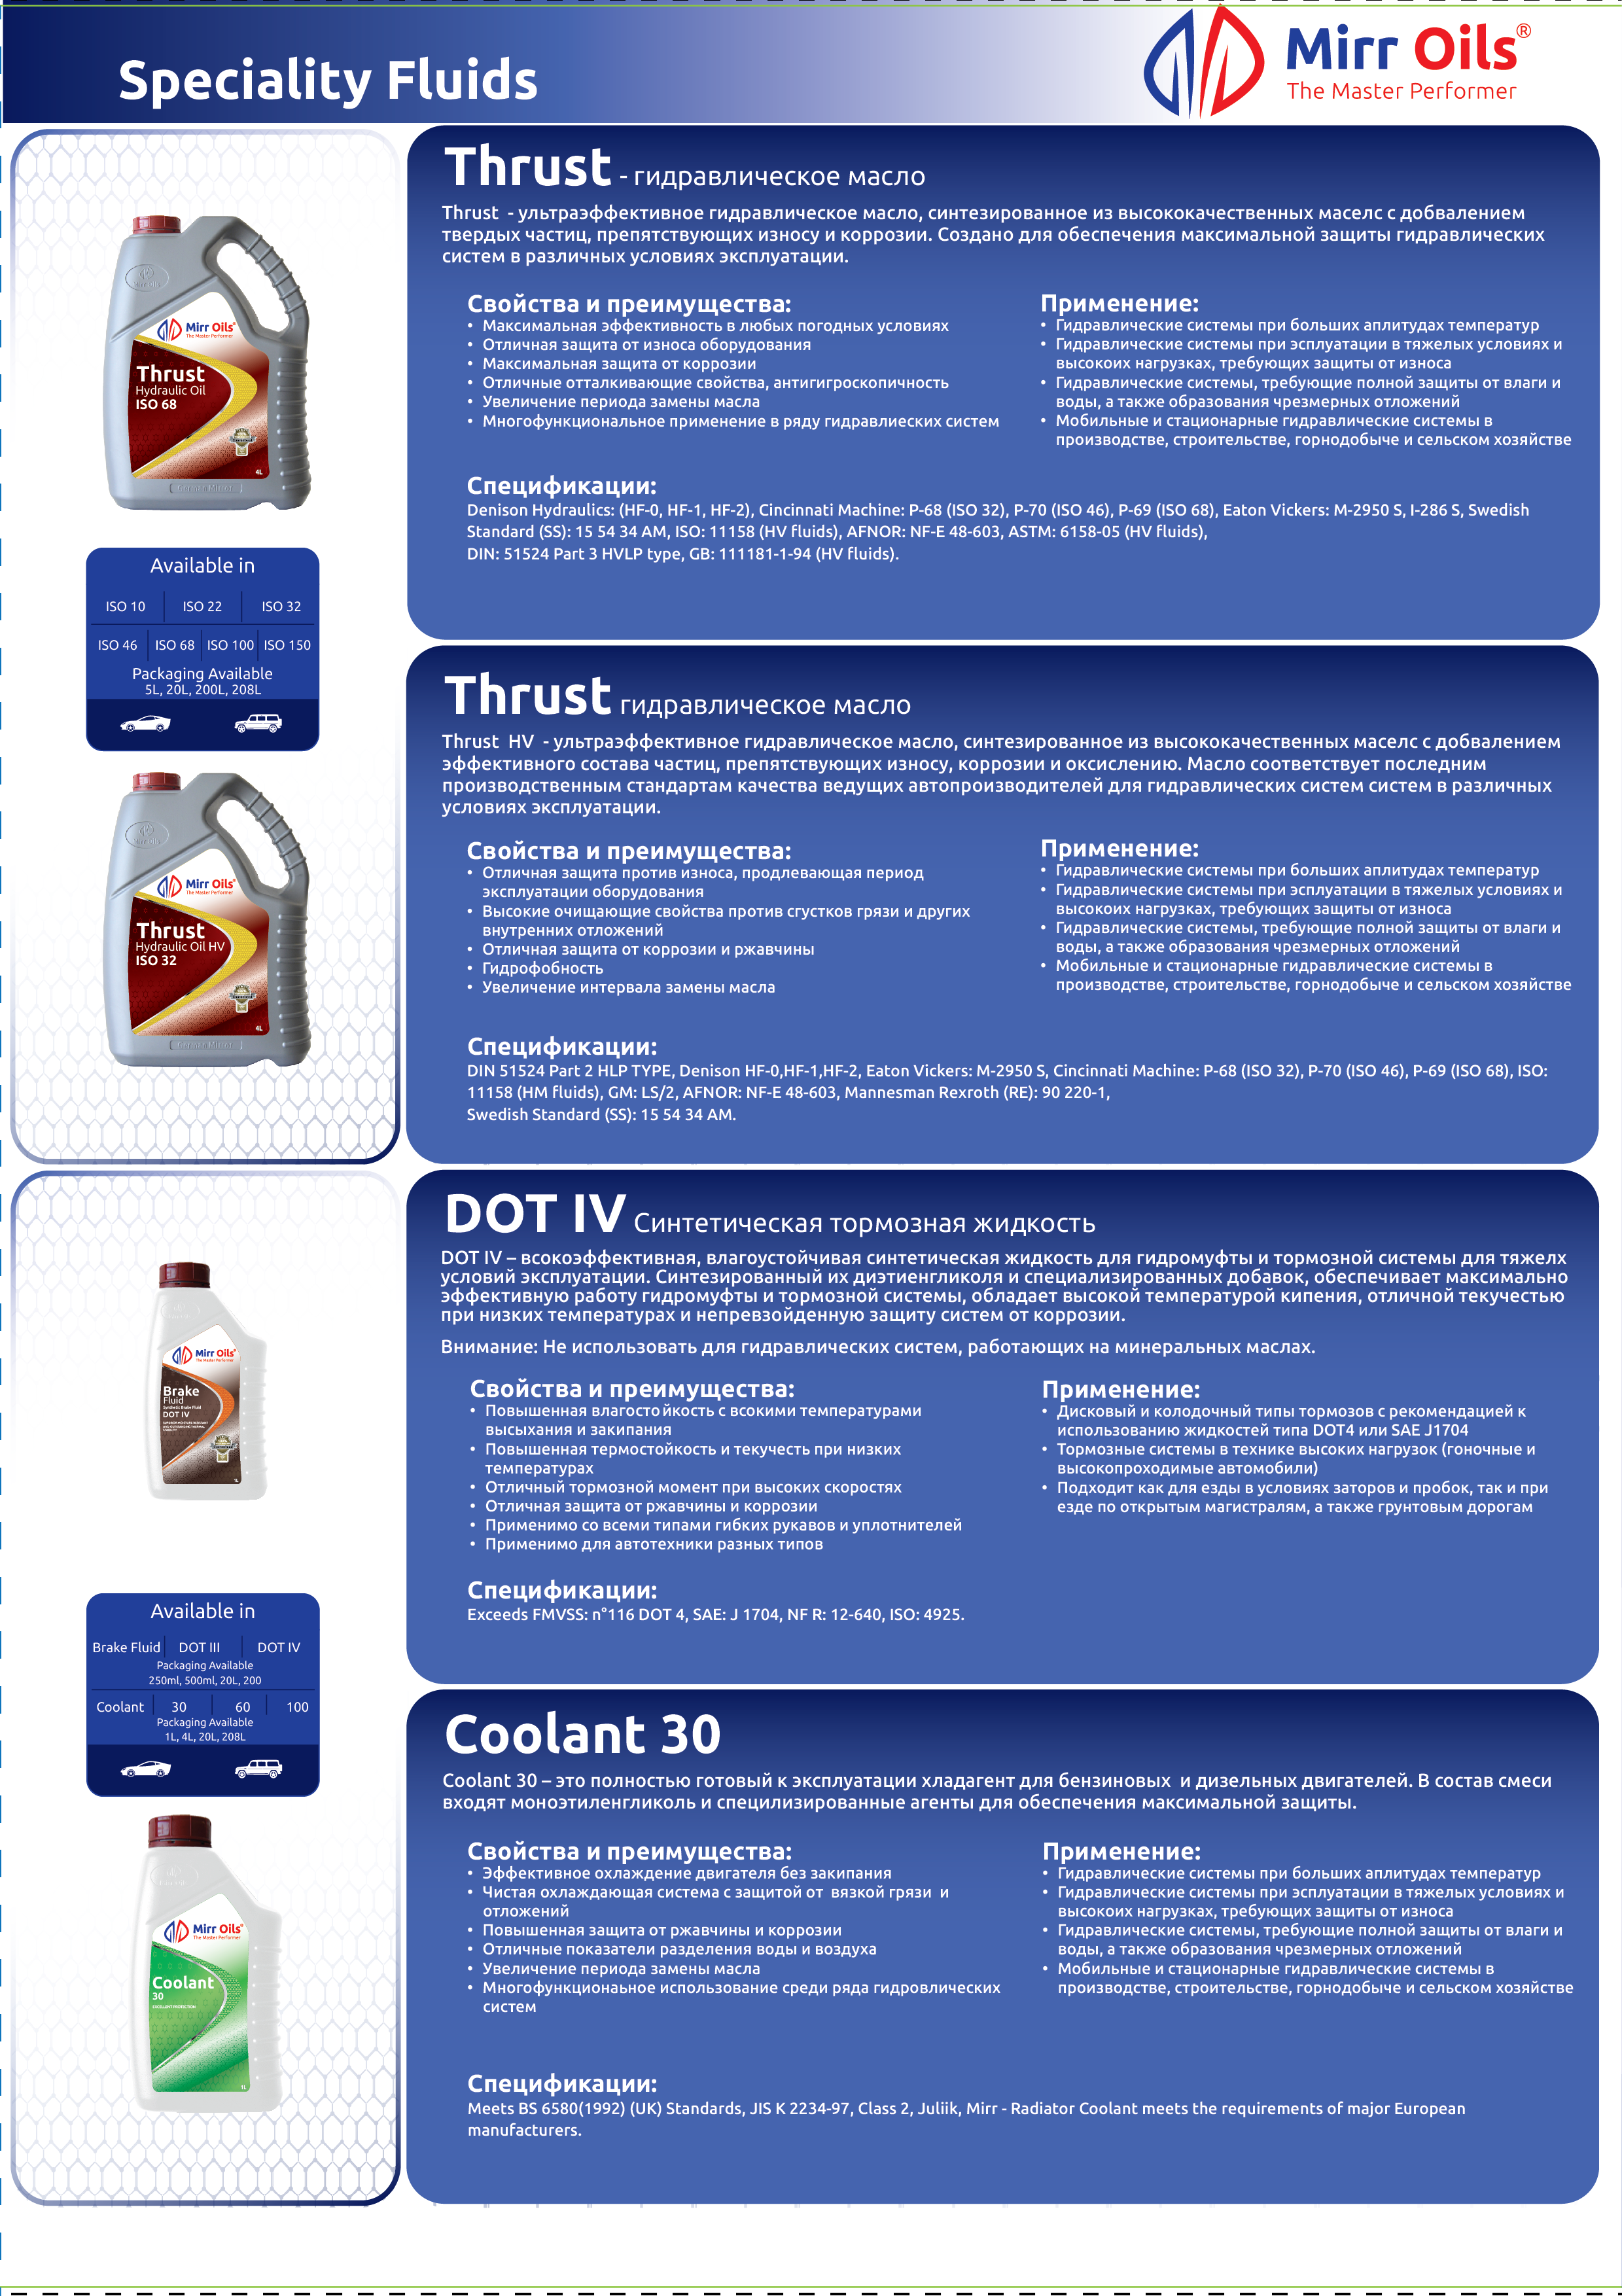 Гидравлическое масло для заливки в домкраты: критерии выбора, особенности использования и инструкции